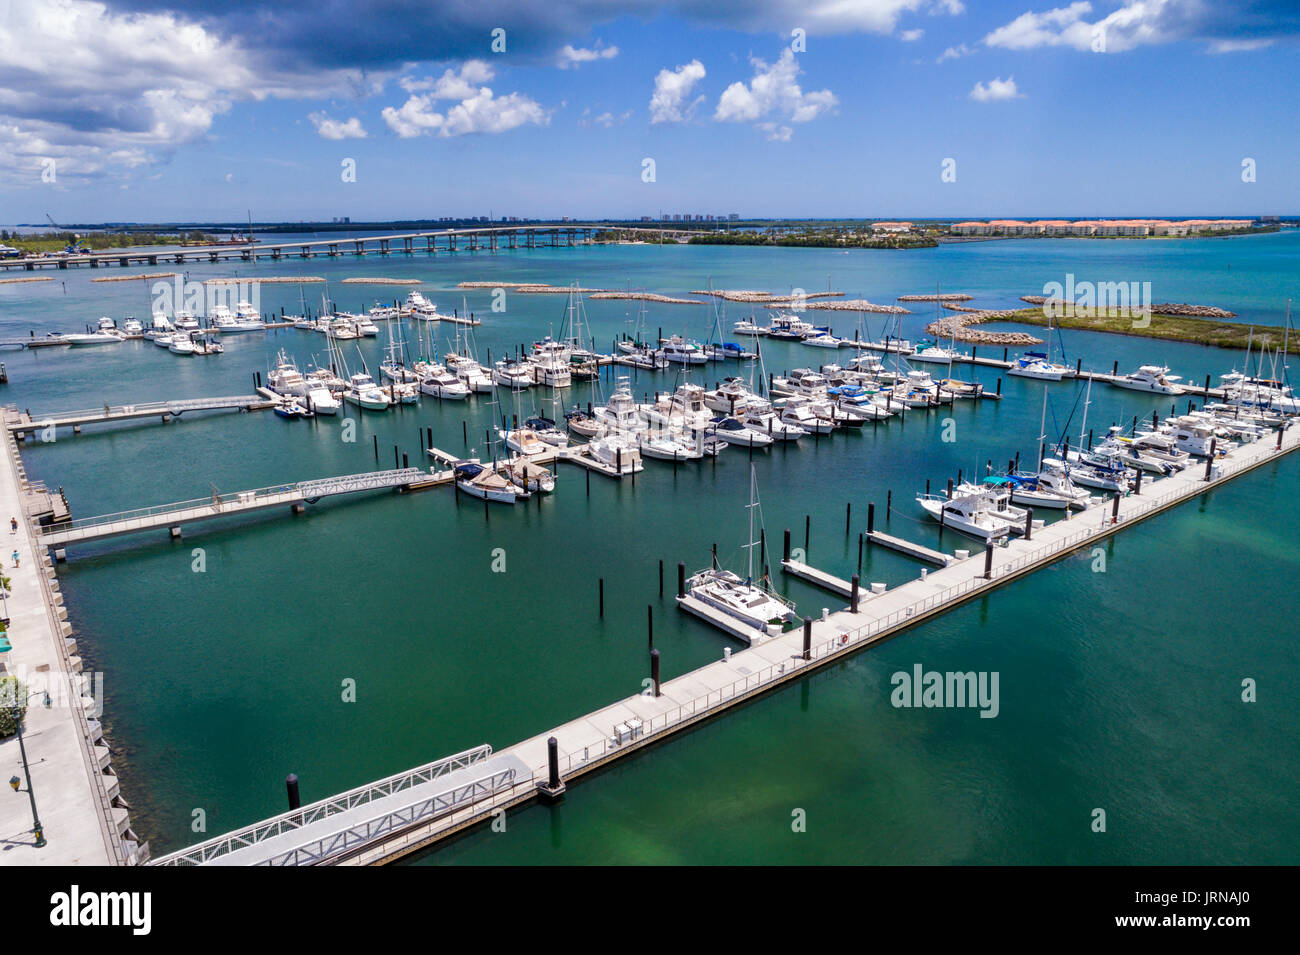 Florida, Fort Ft Pierce, City Marina Square, Indian River Water, Luftaufnahme von oben aus der Vogelperspektive, Boote, Yachten, Besucher reisen Touristen Stockfoto